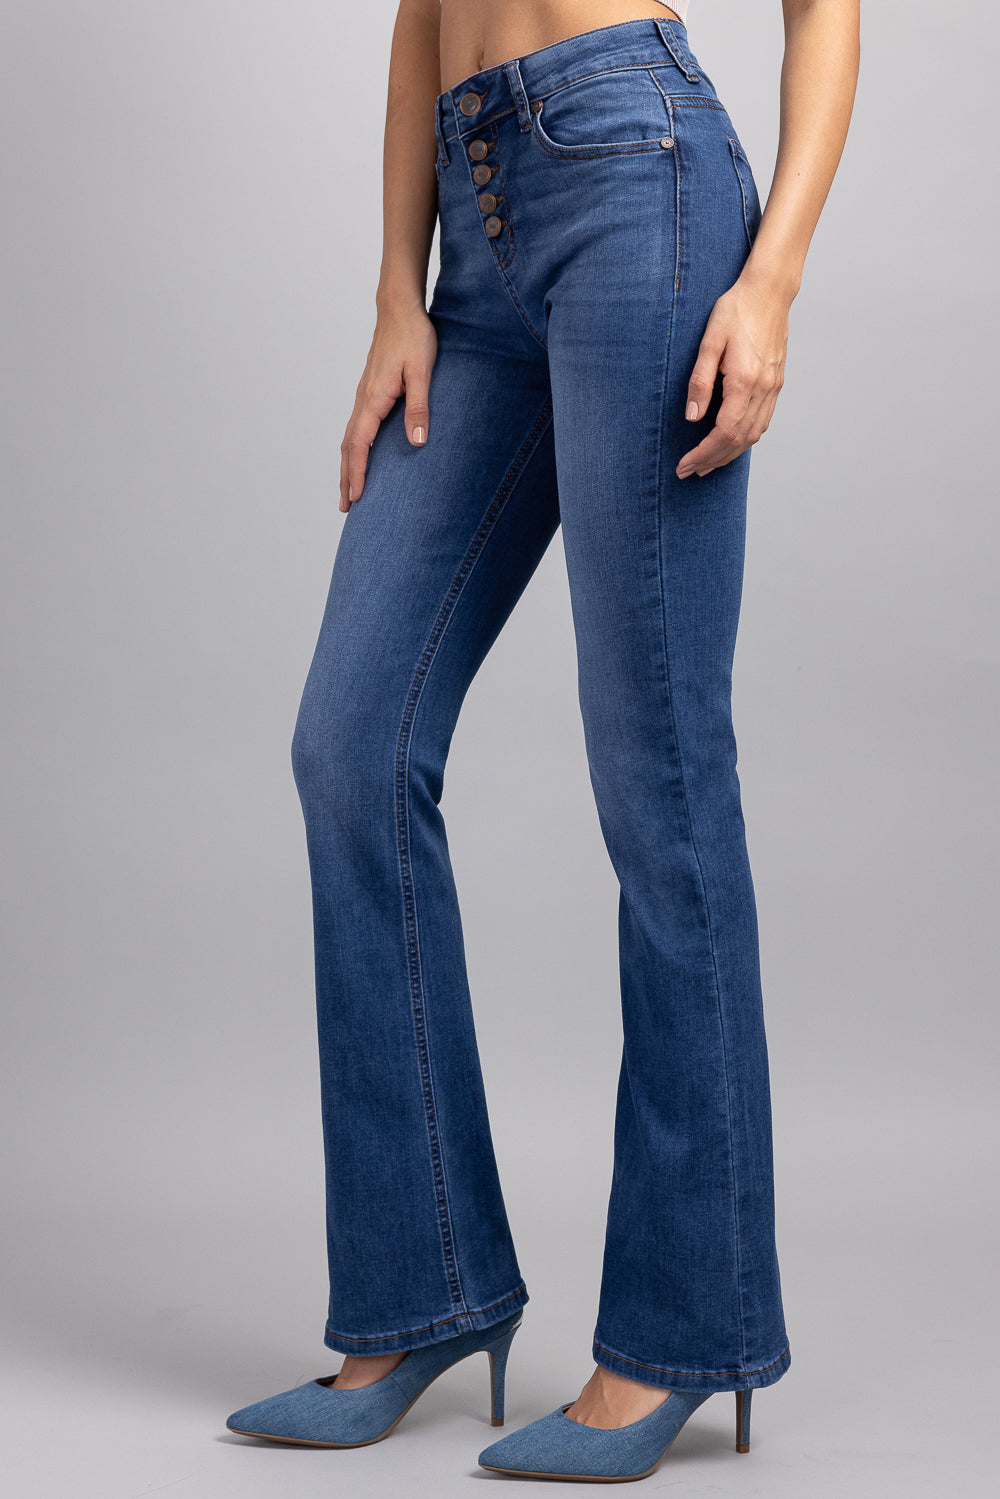 Jeans bootcut clásicos de tiro alto de los años 70